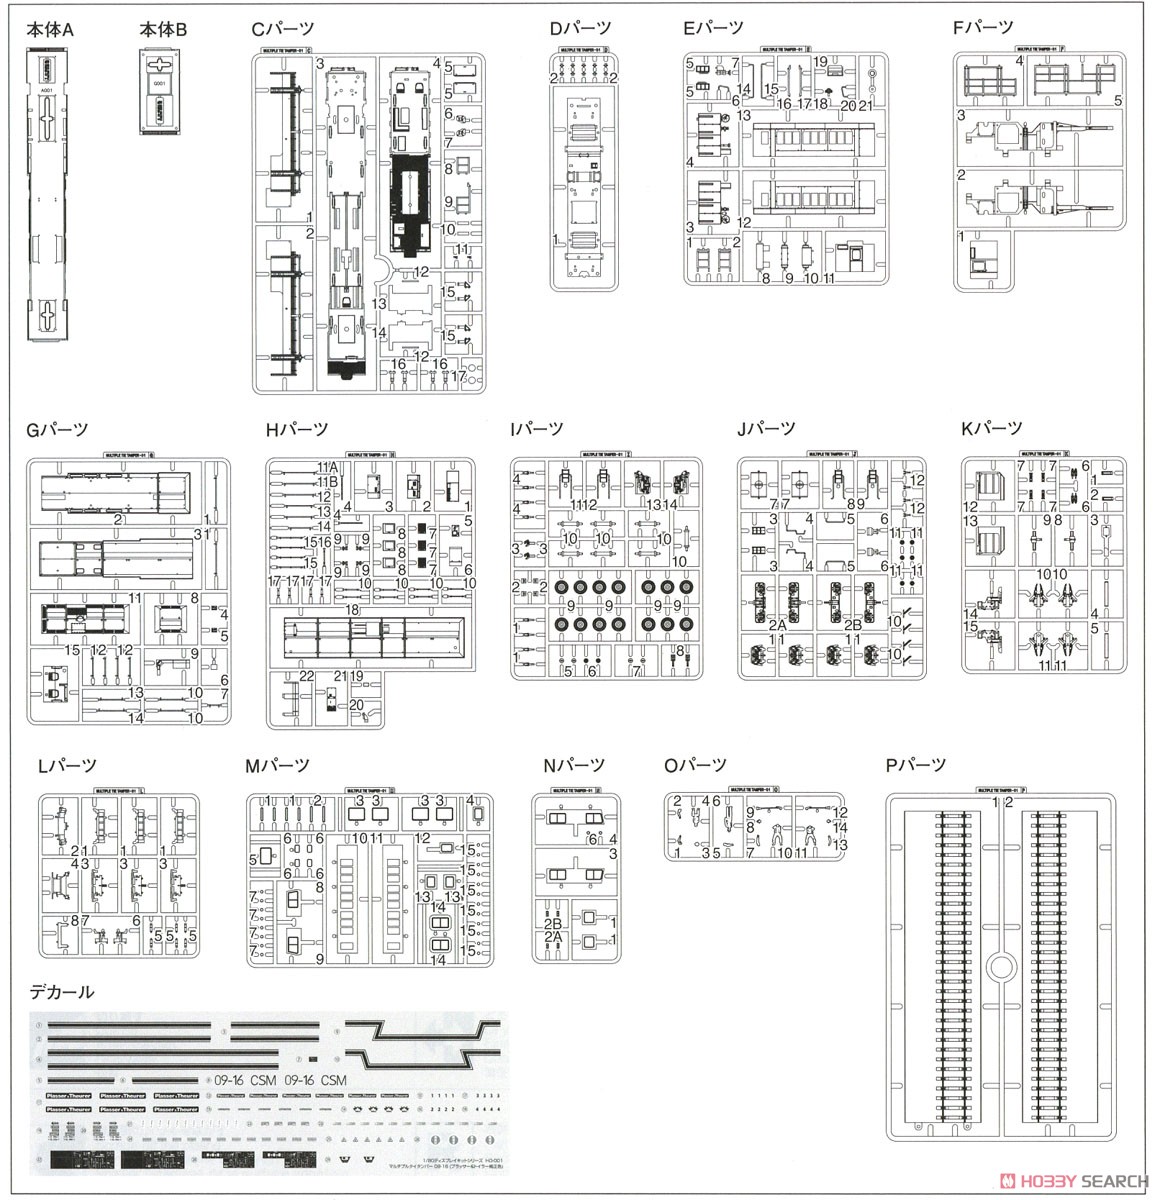 1/80(HO) Multiple Tie Tamper 09-16 (Plasser & Theurer Genuine Color) Display Kit (Unassembled Kit) (Model Train) Assembly guide12